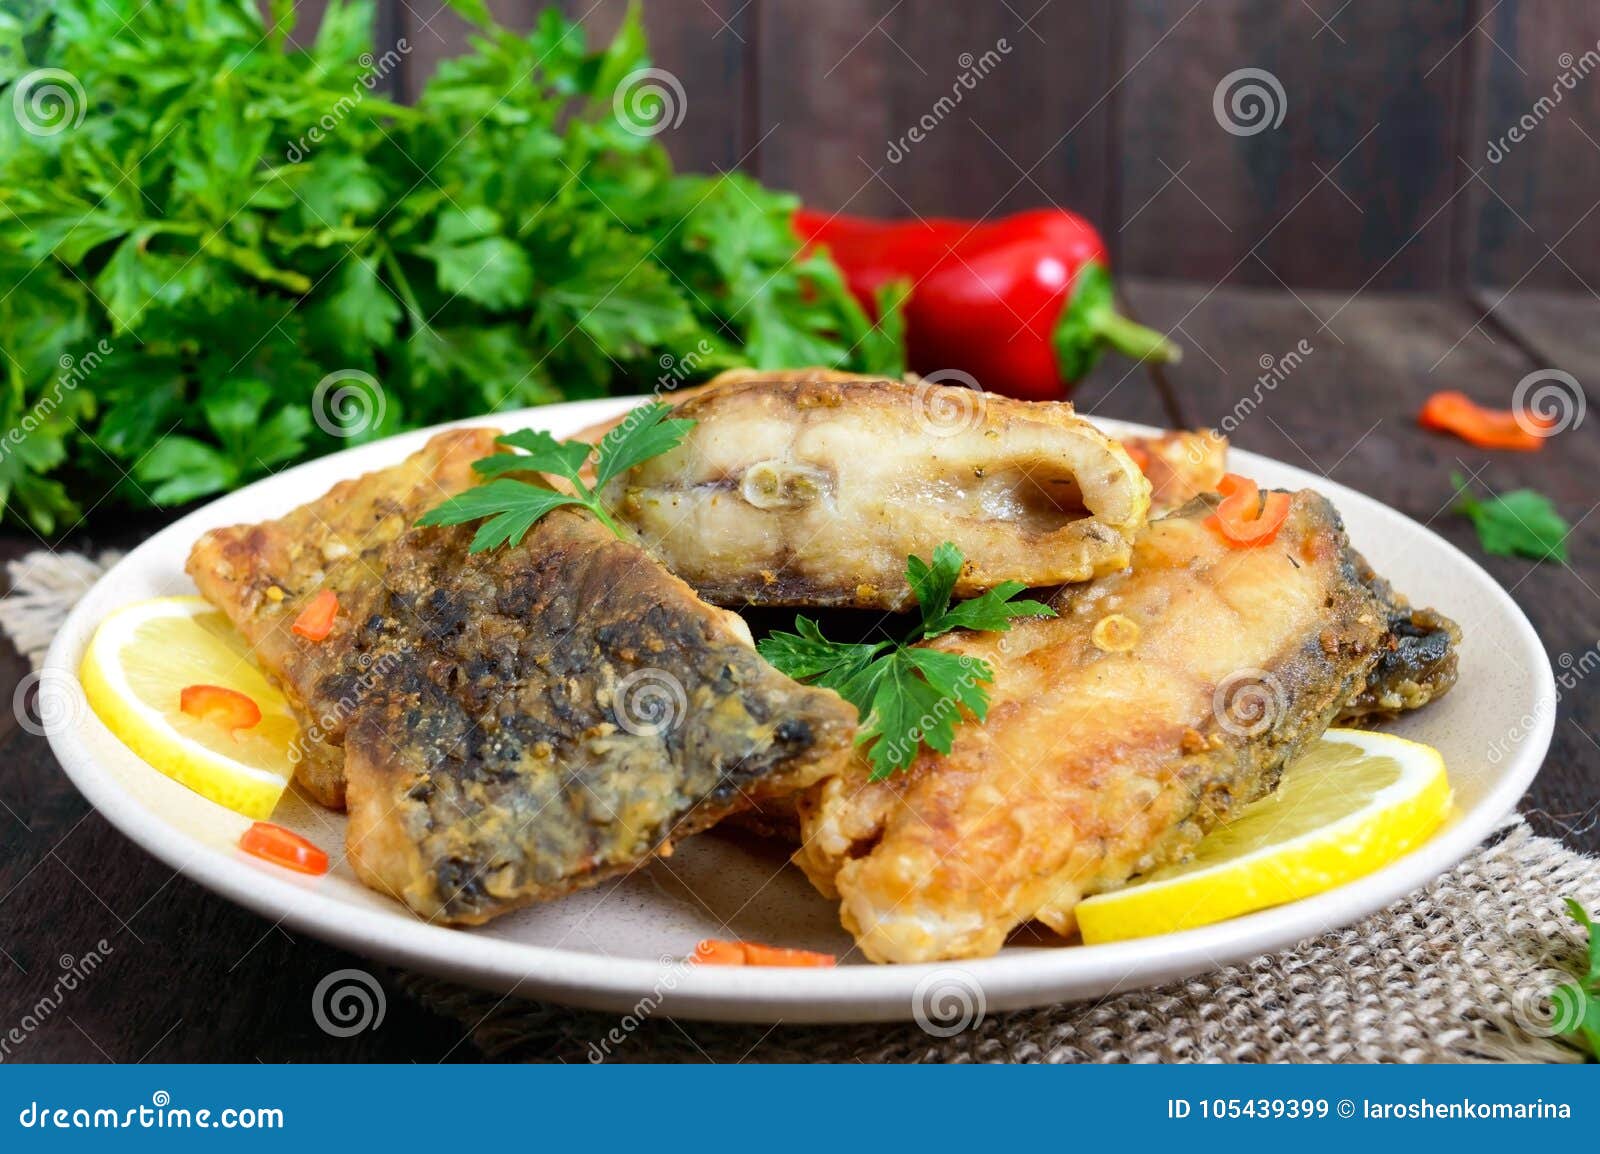 Карп жареный кусочками. Блюдо из рыбы сазан. Жареный сазан. Кусочки жареного карпа на тарелке. Жареный сазан кусок.